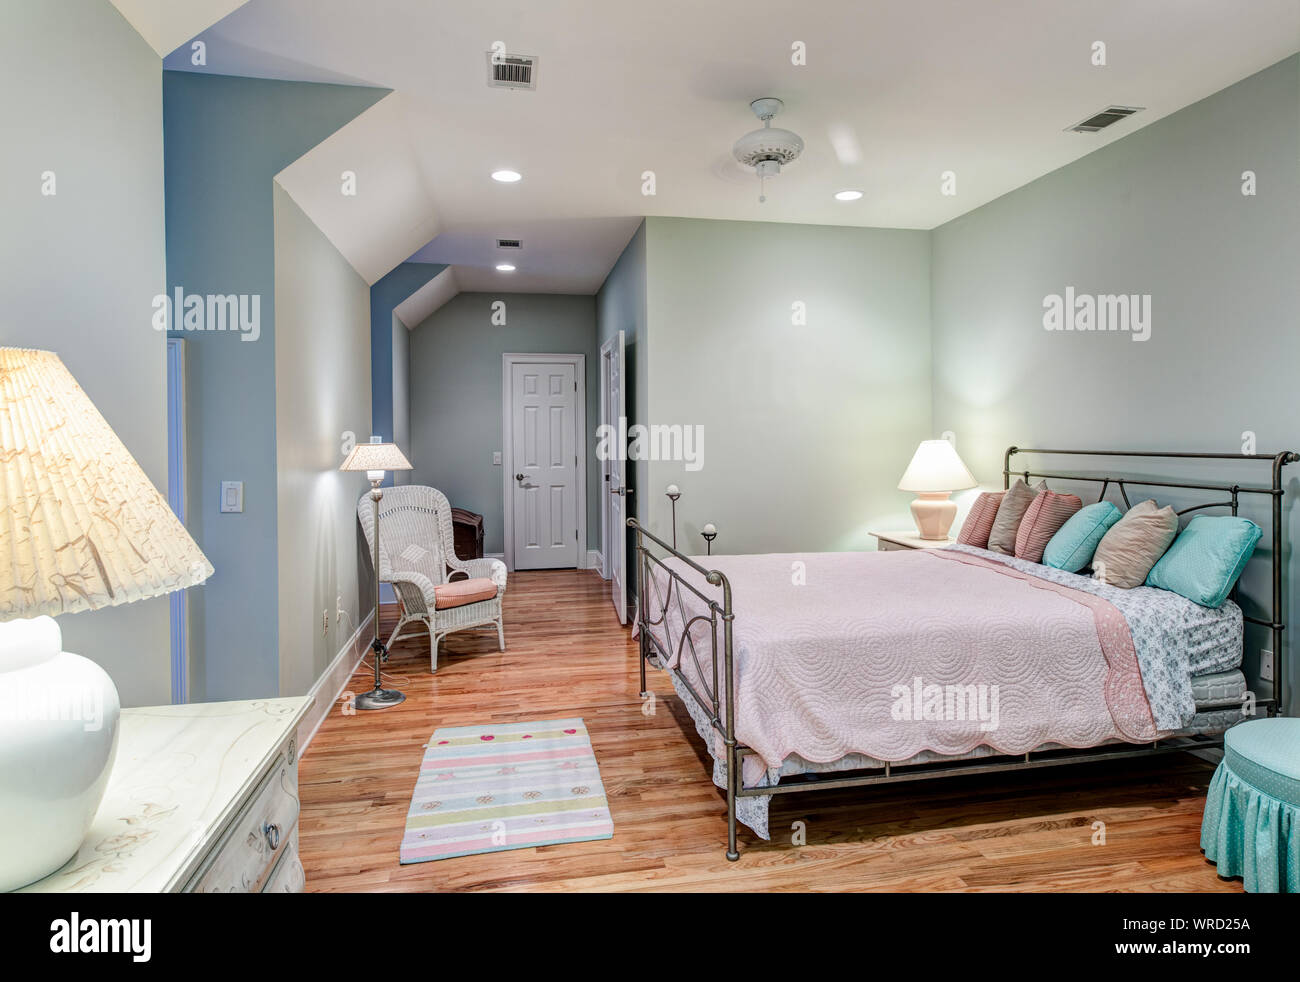 Eleganti camere da letto mansarda con pavimenti in legno duro Foto Stock